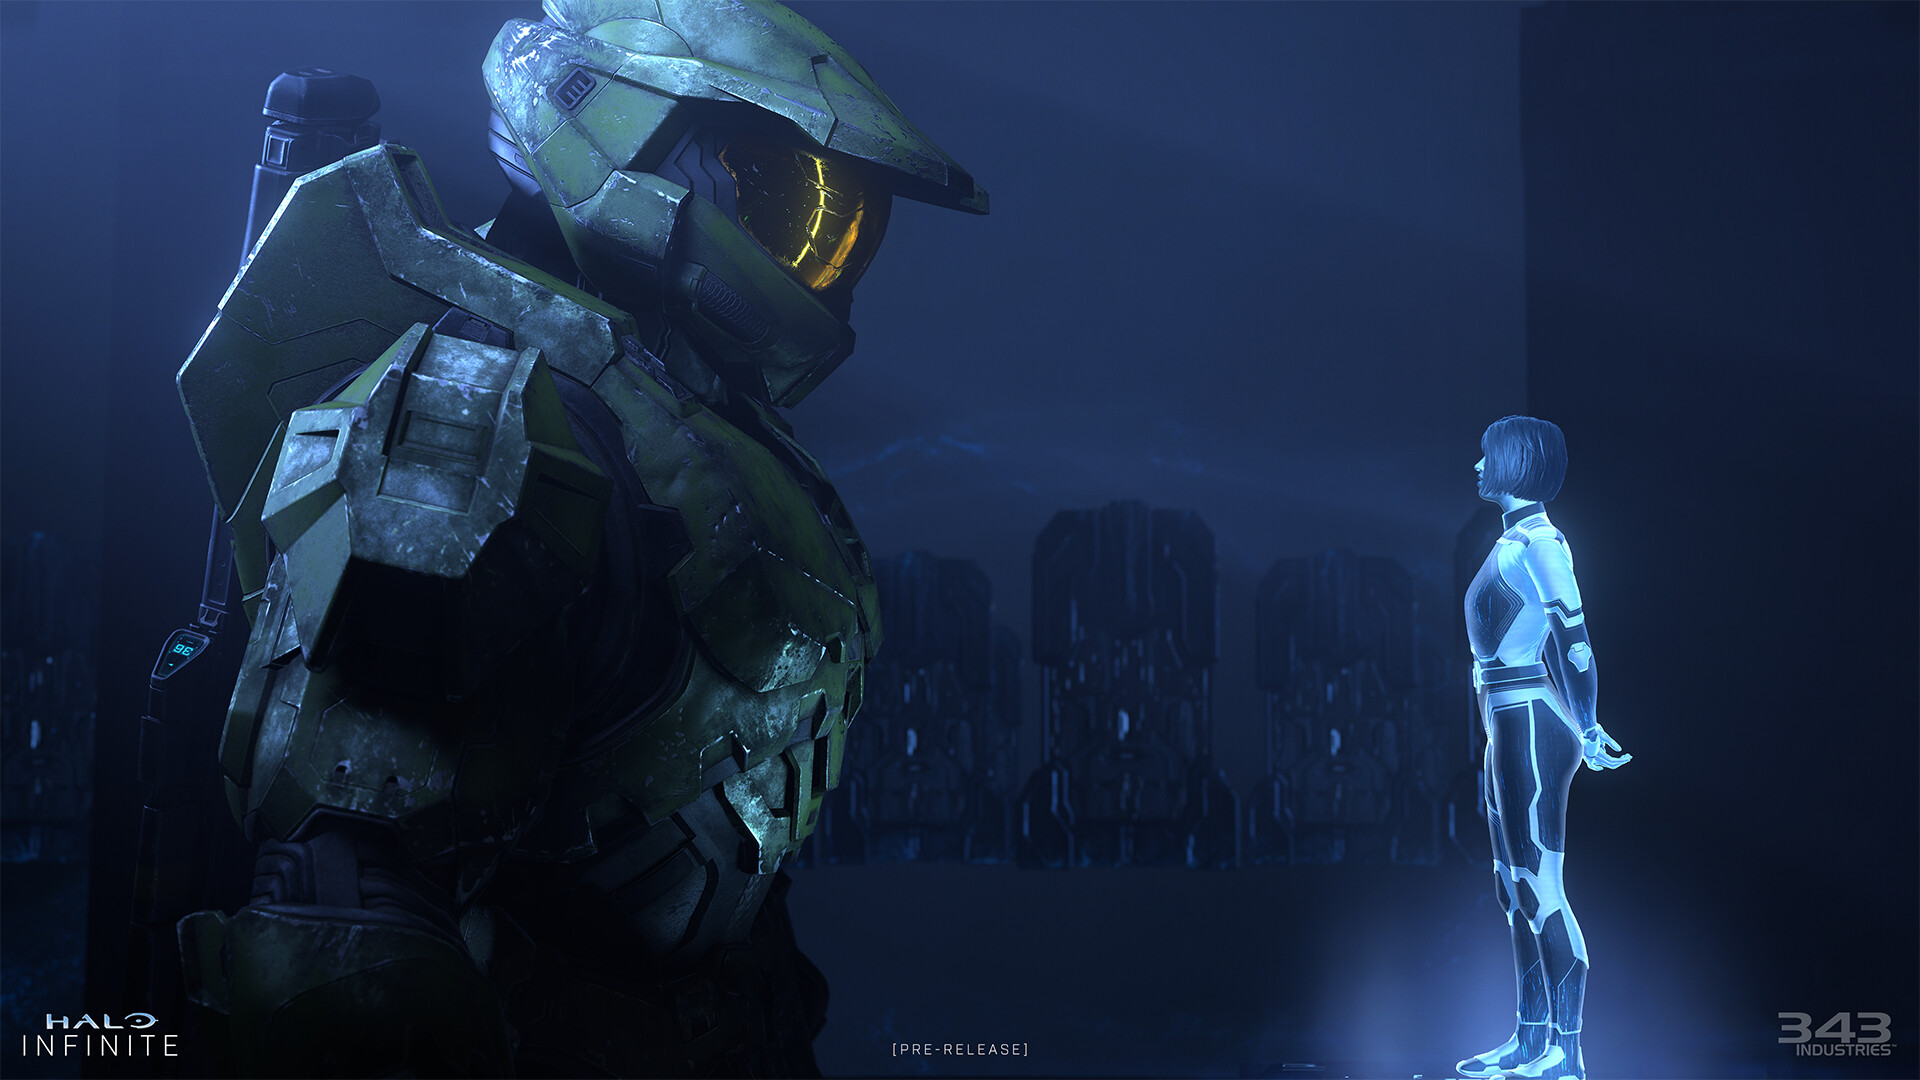 Ab Staffel 3 werden die Staffeln von Halo Infinite "konsistent" sein, versichert 343 Industries